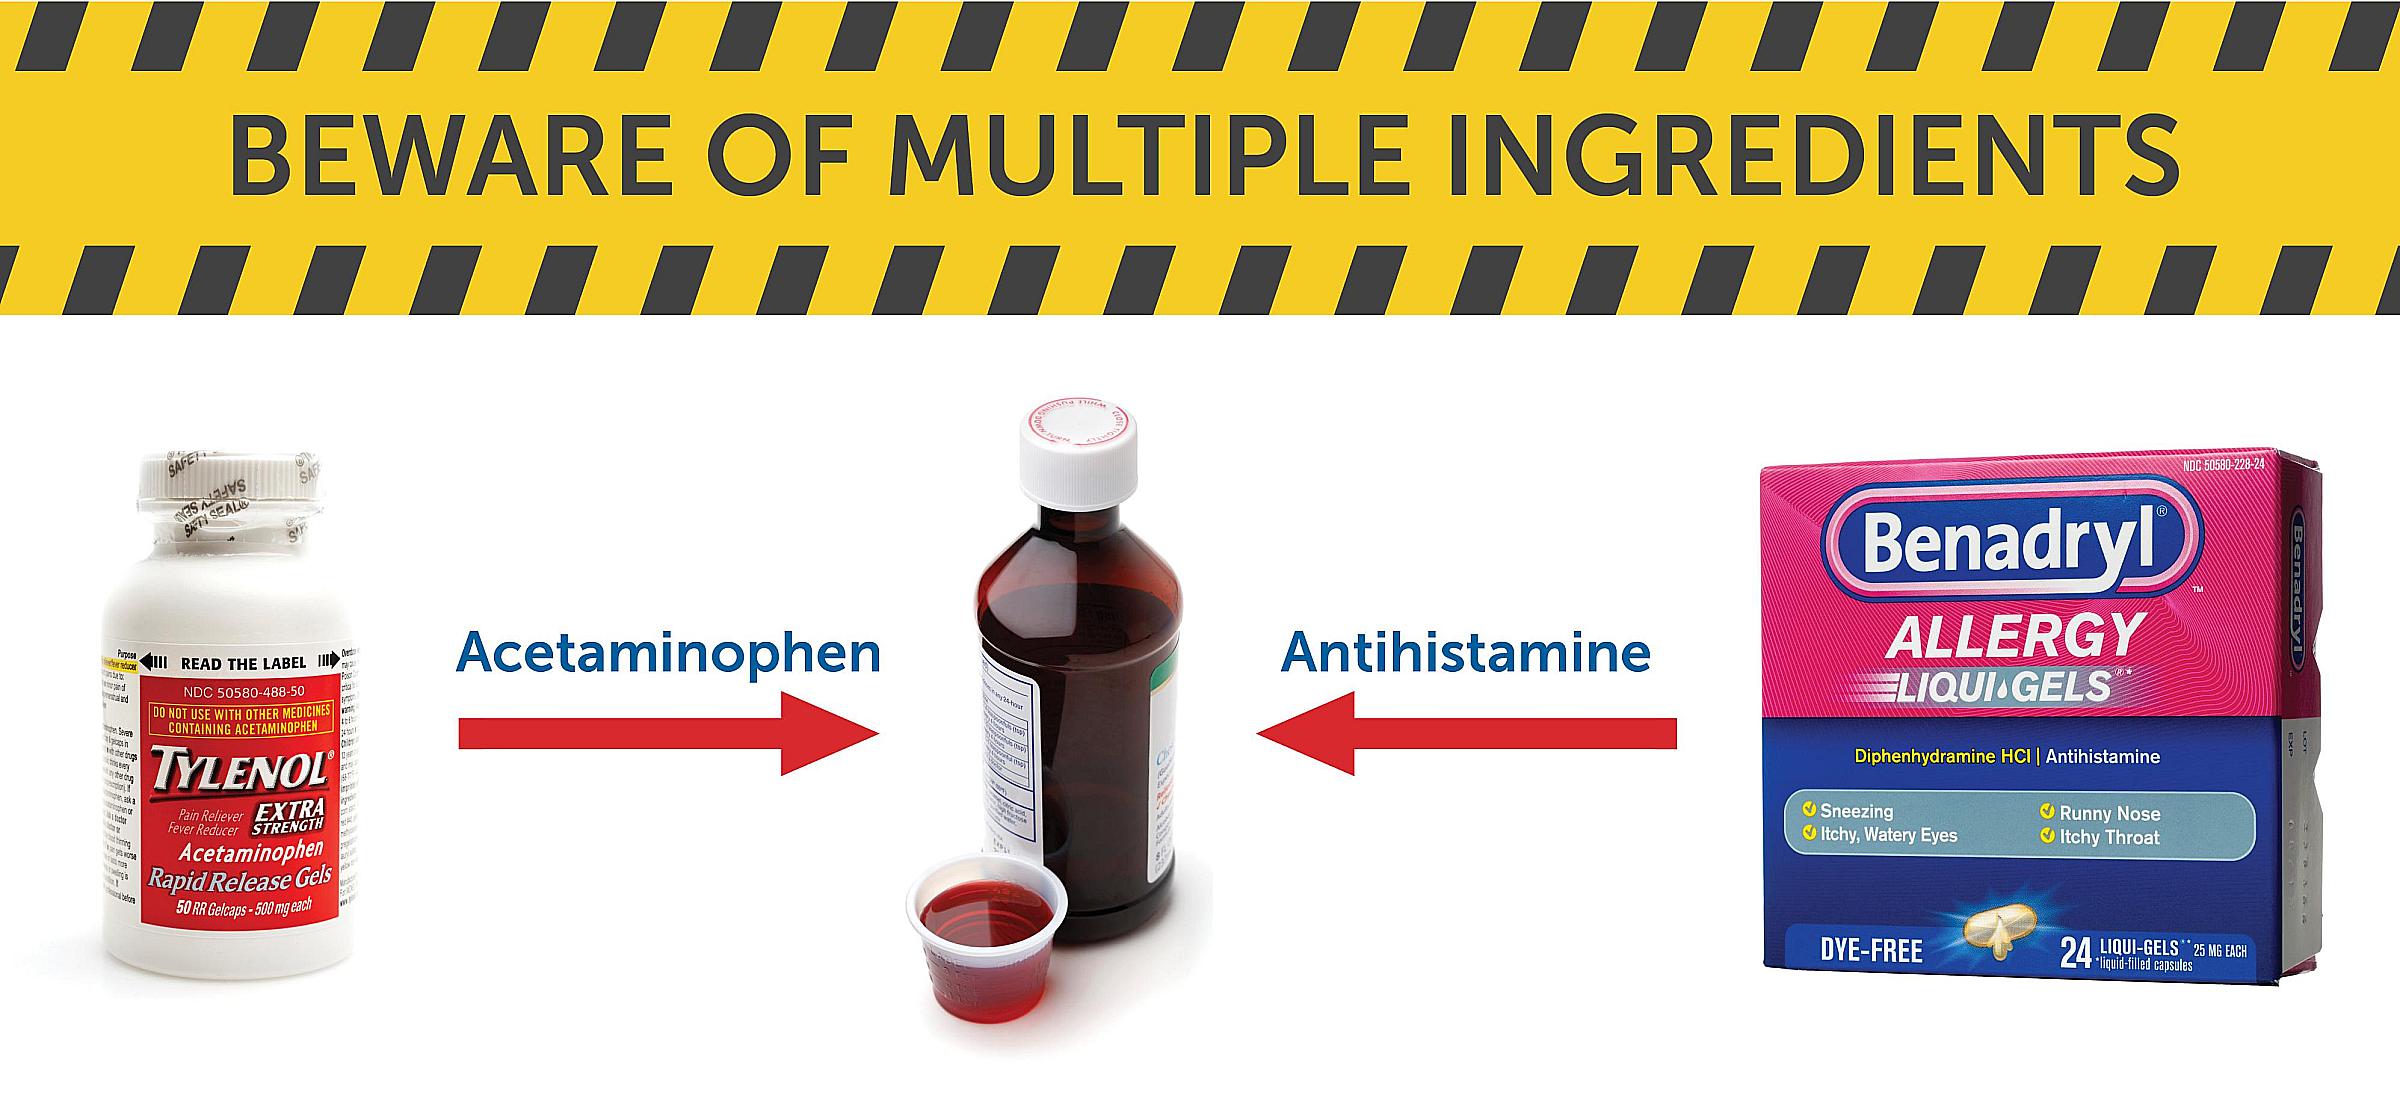 Beware of multiple Ingredients